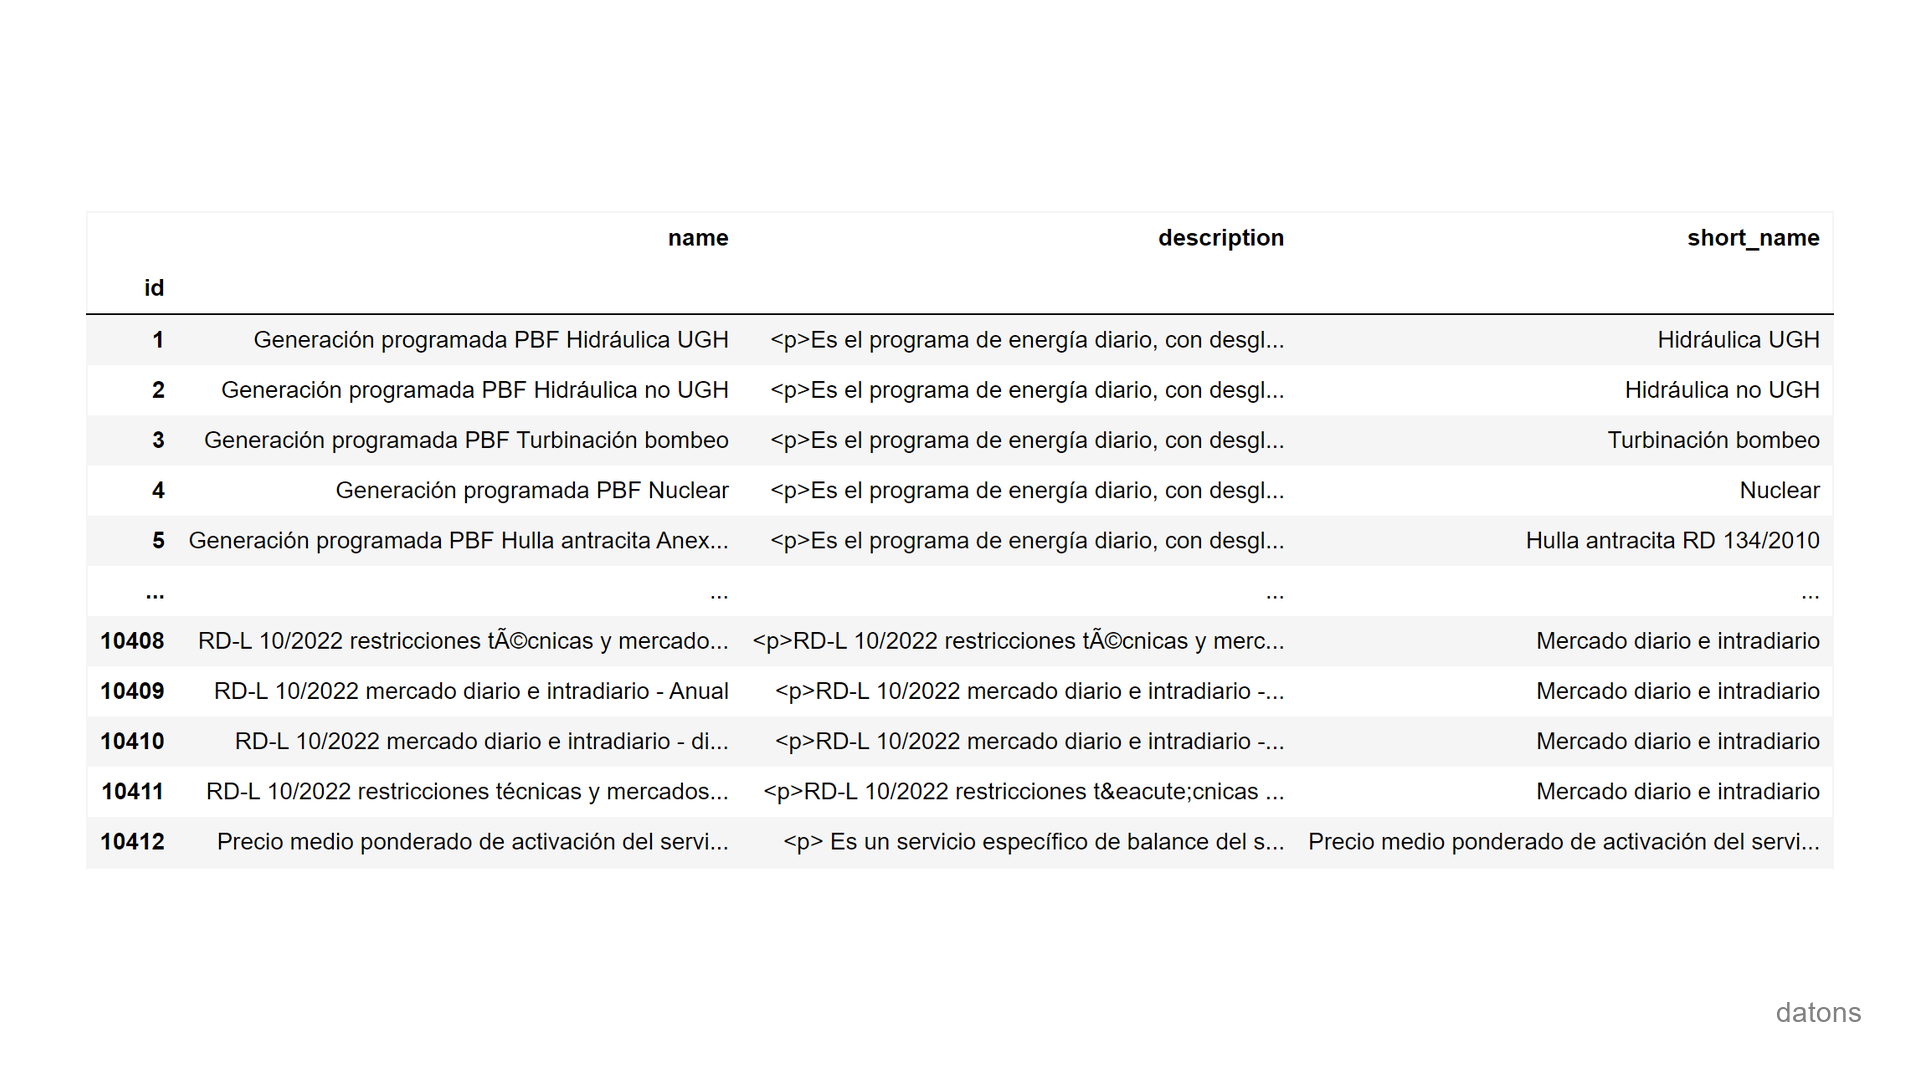 ESIOS API in Python: Spain energy data analysis